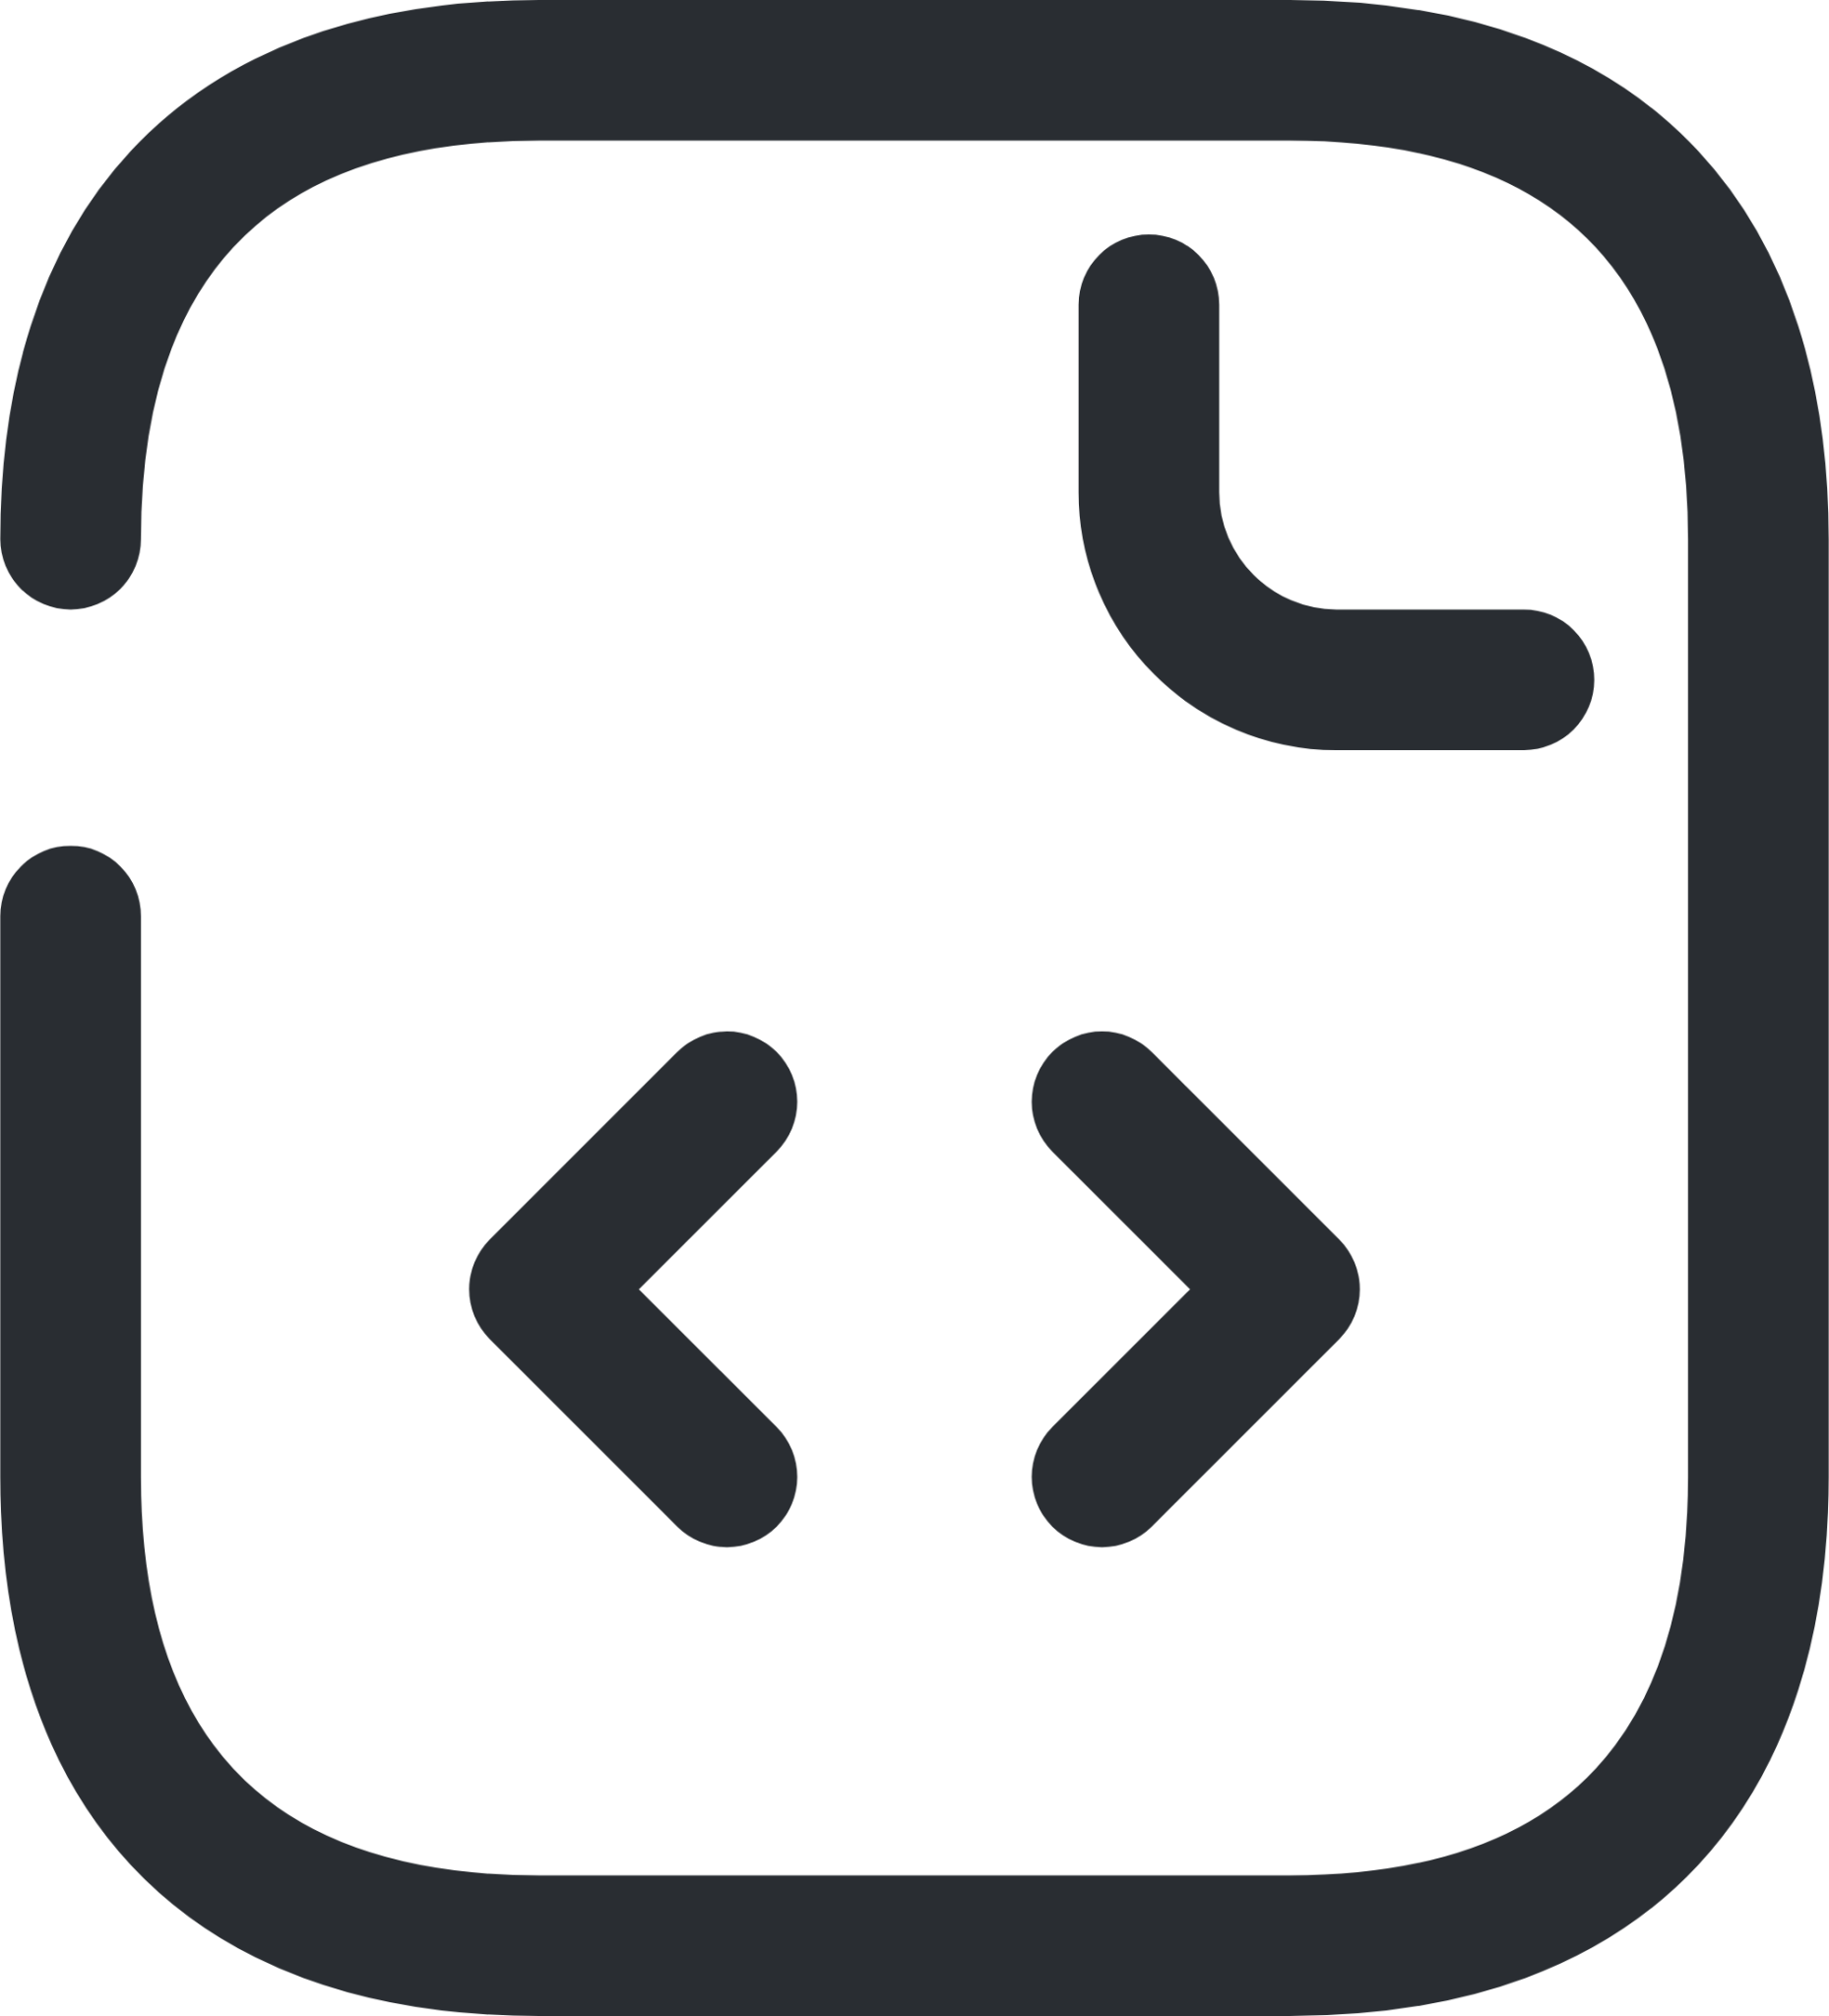 document code icon